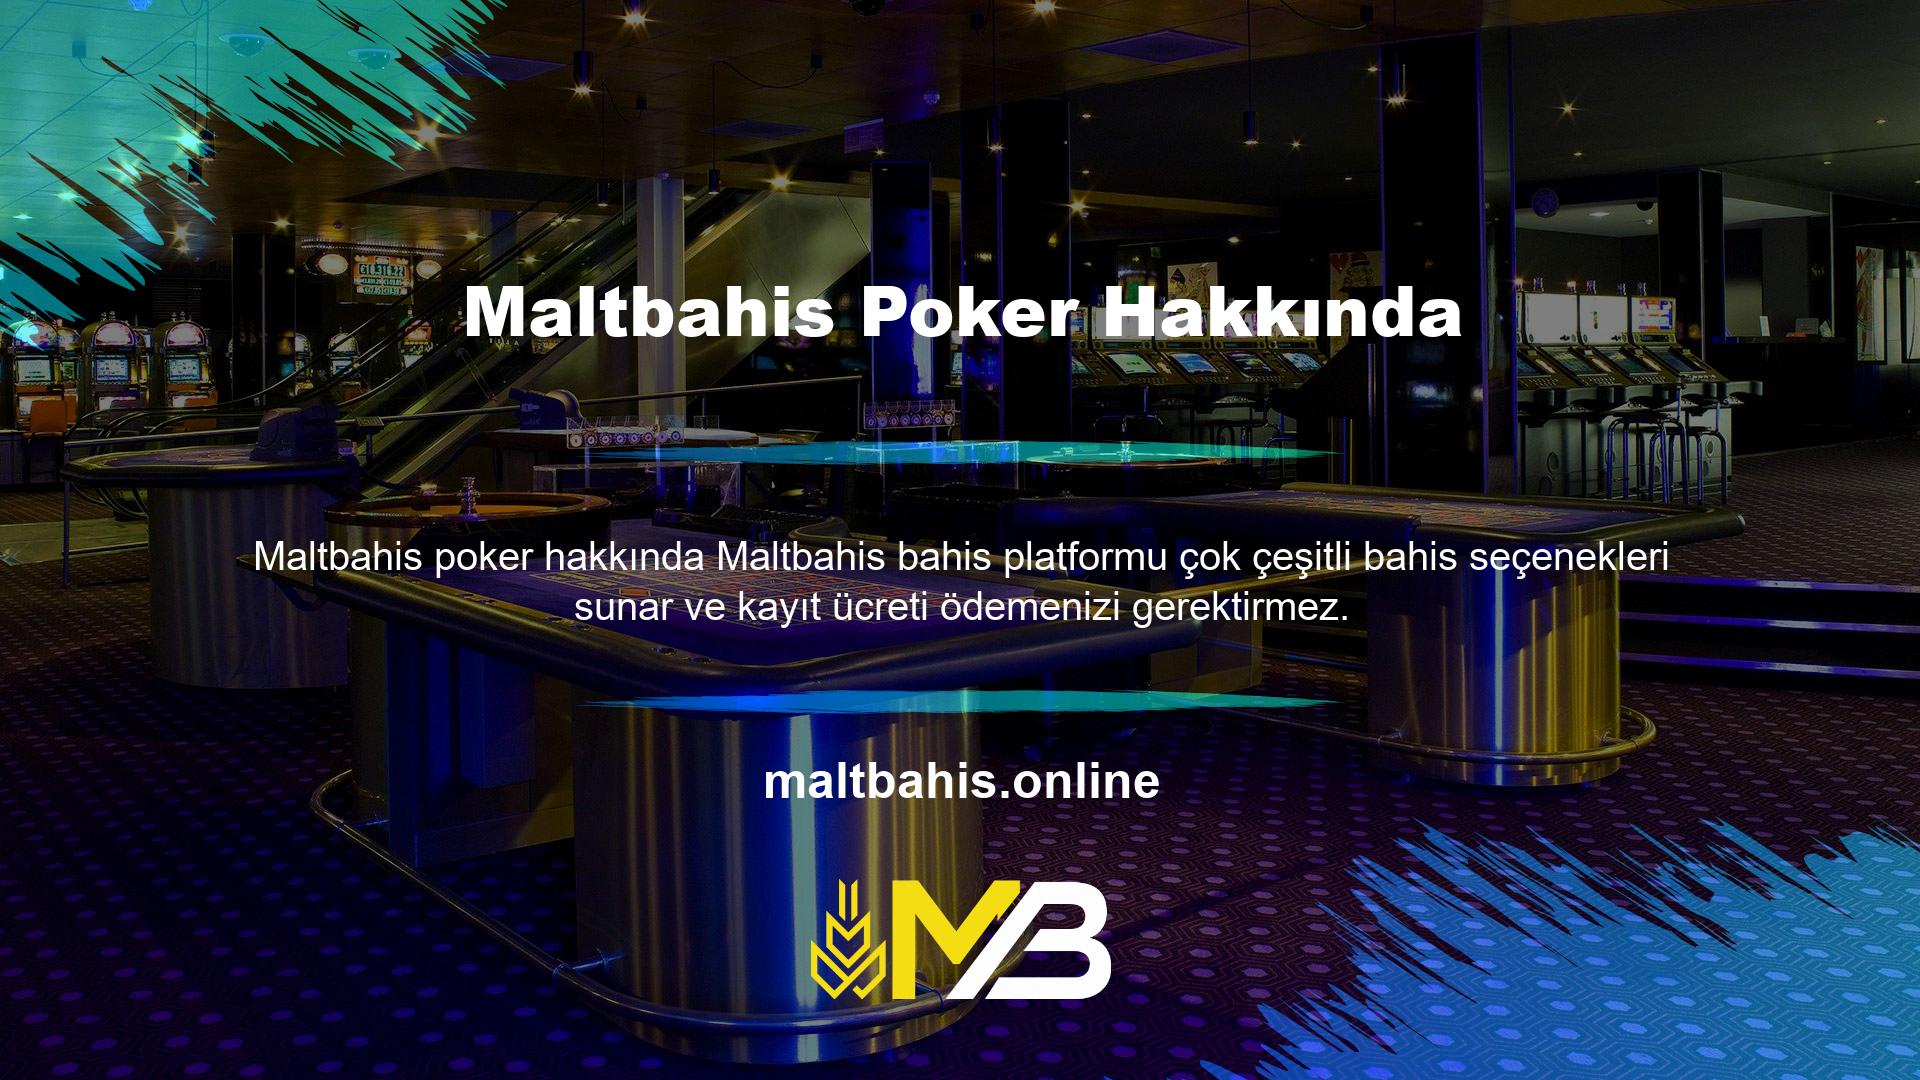 Maltbahis poker hakkında